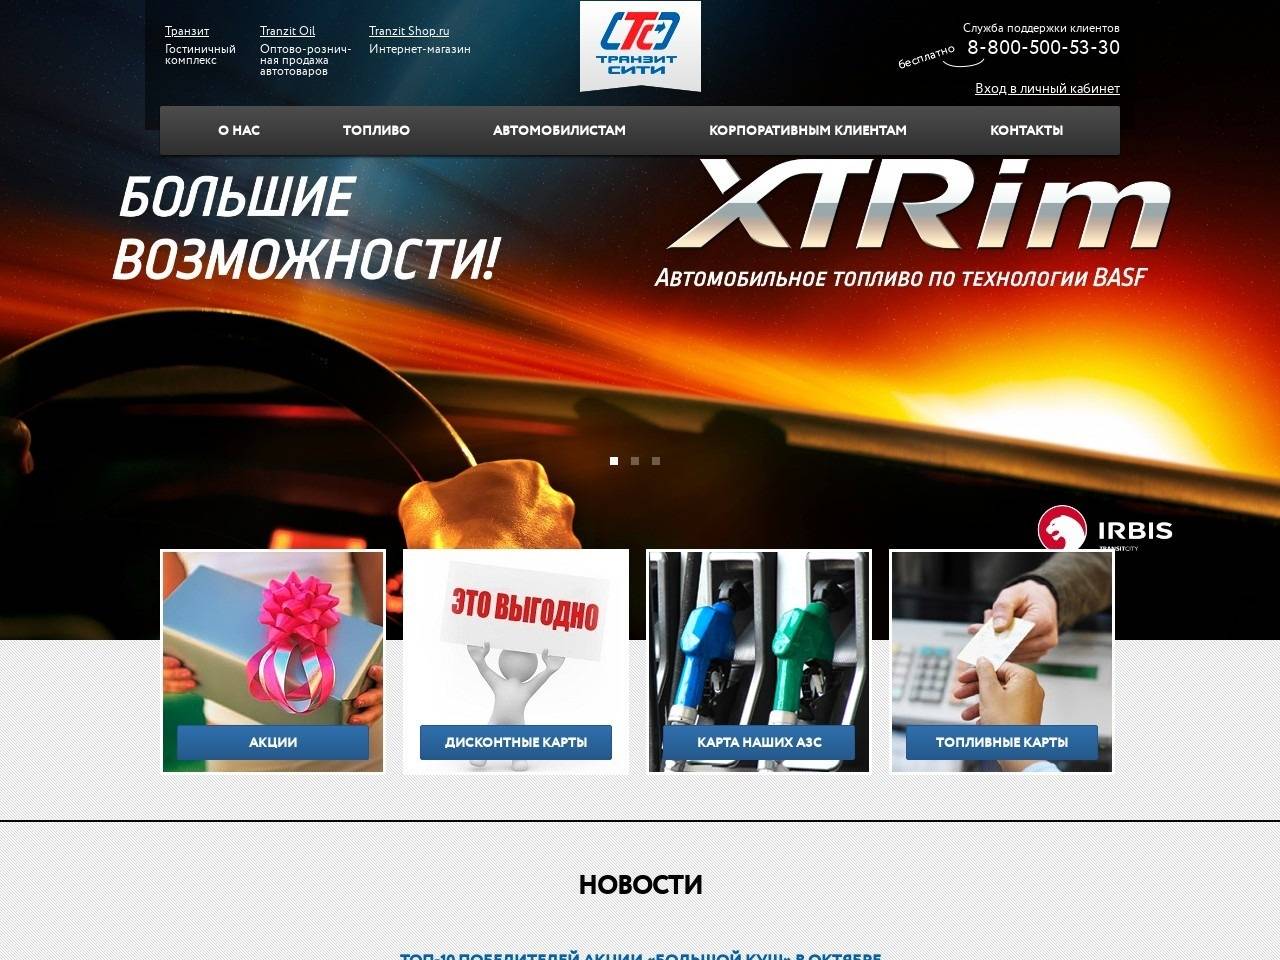 azsirbis.ru регистрация